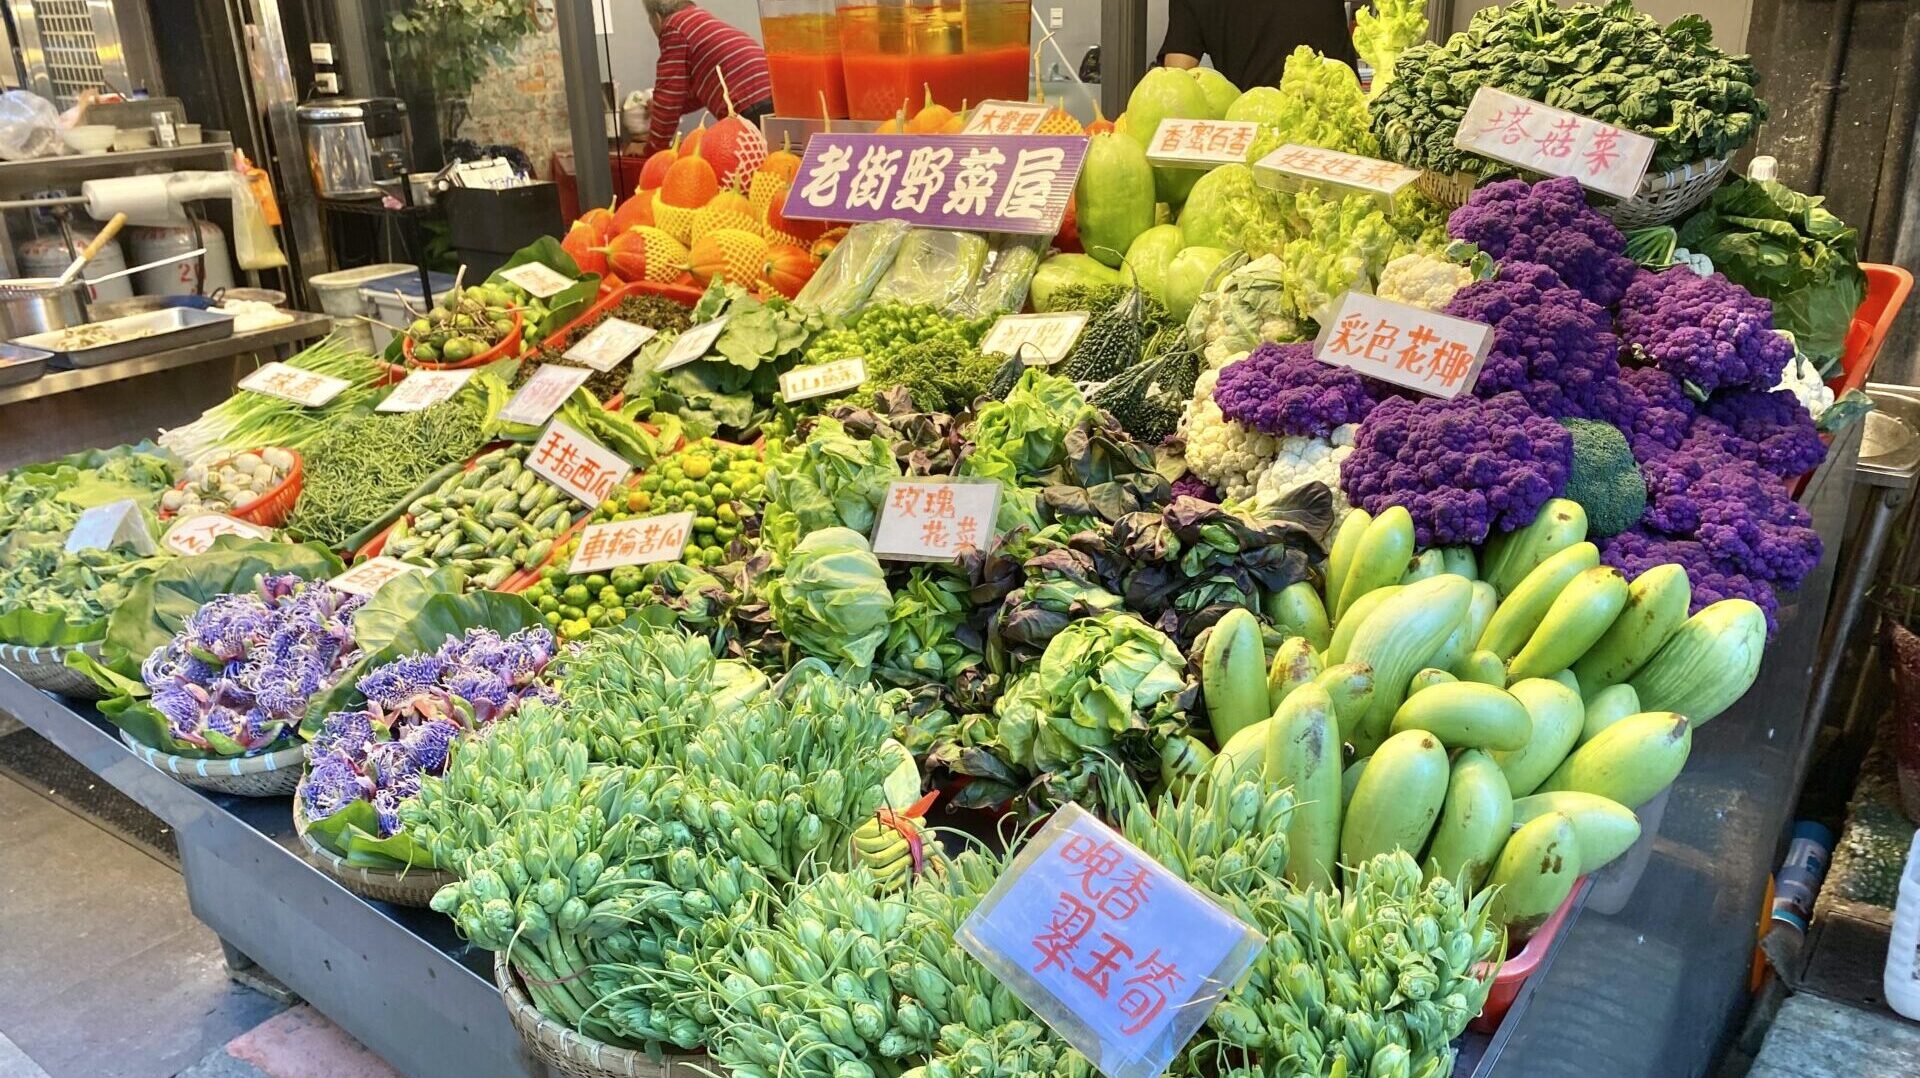 変わった色や形の野菜たち